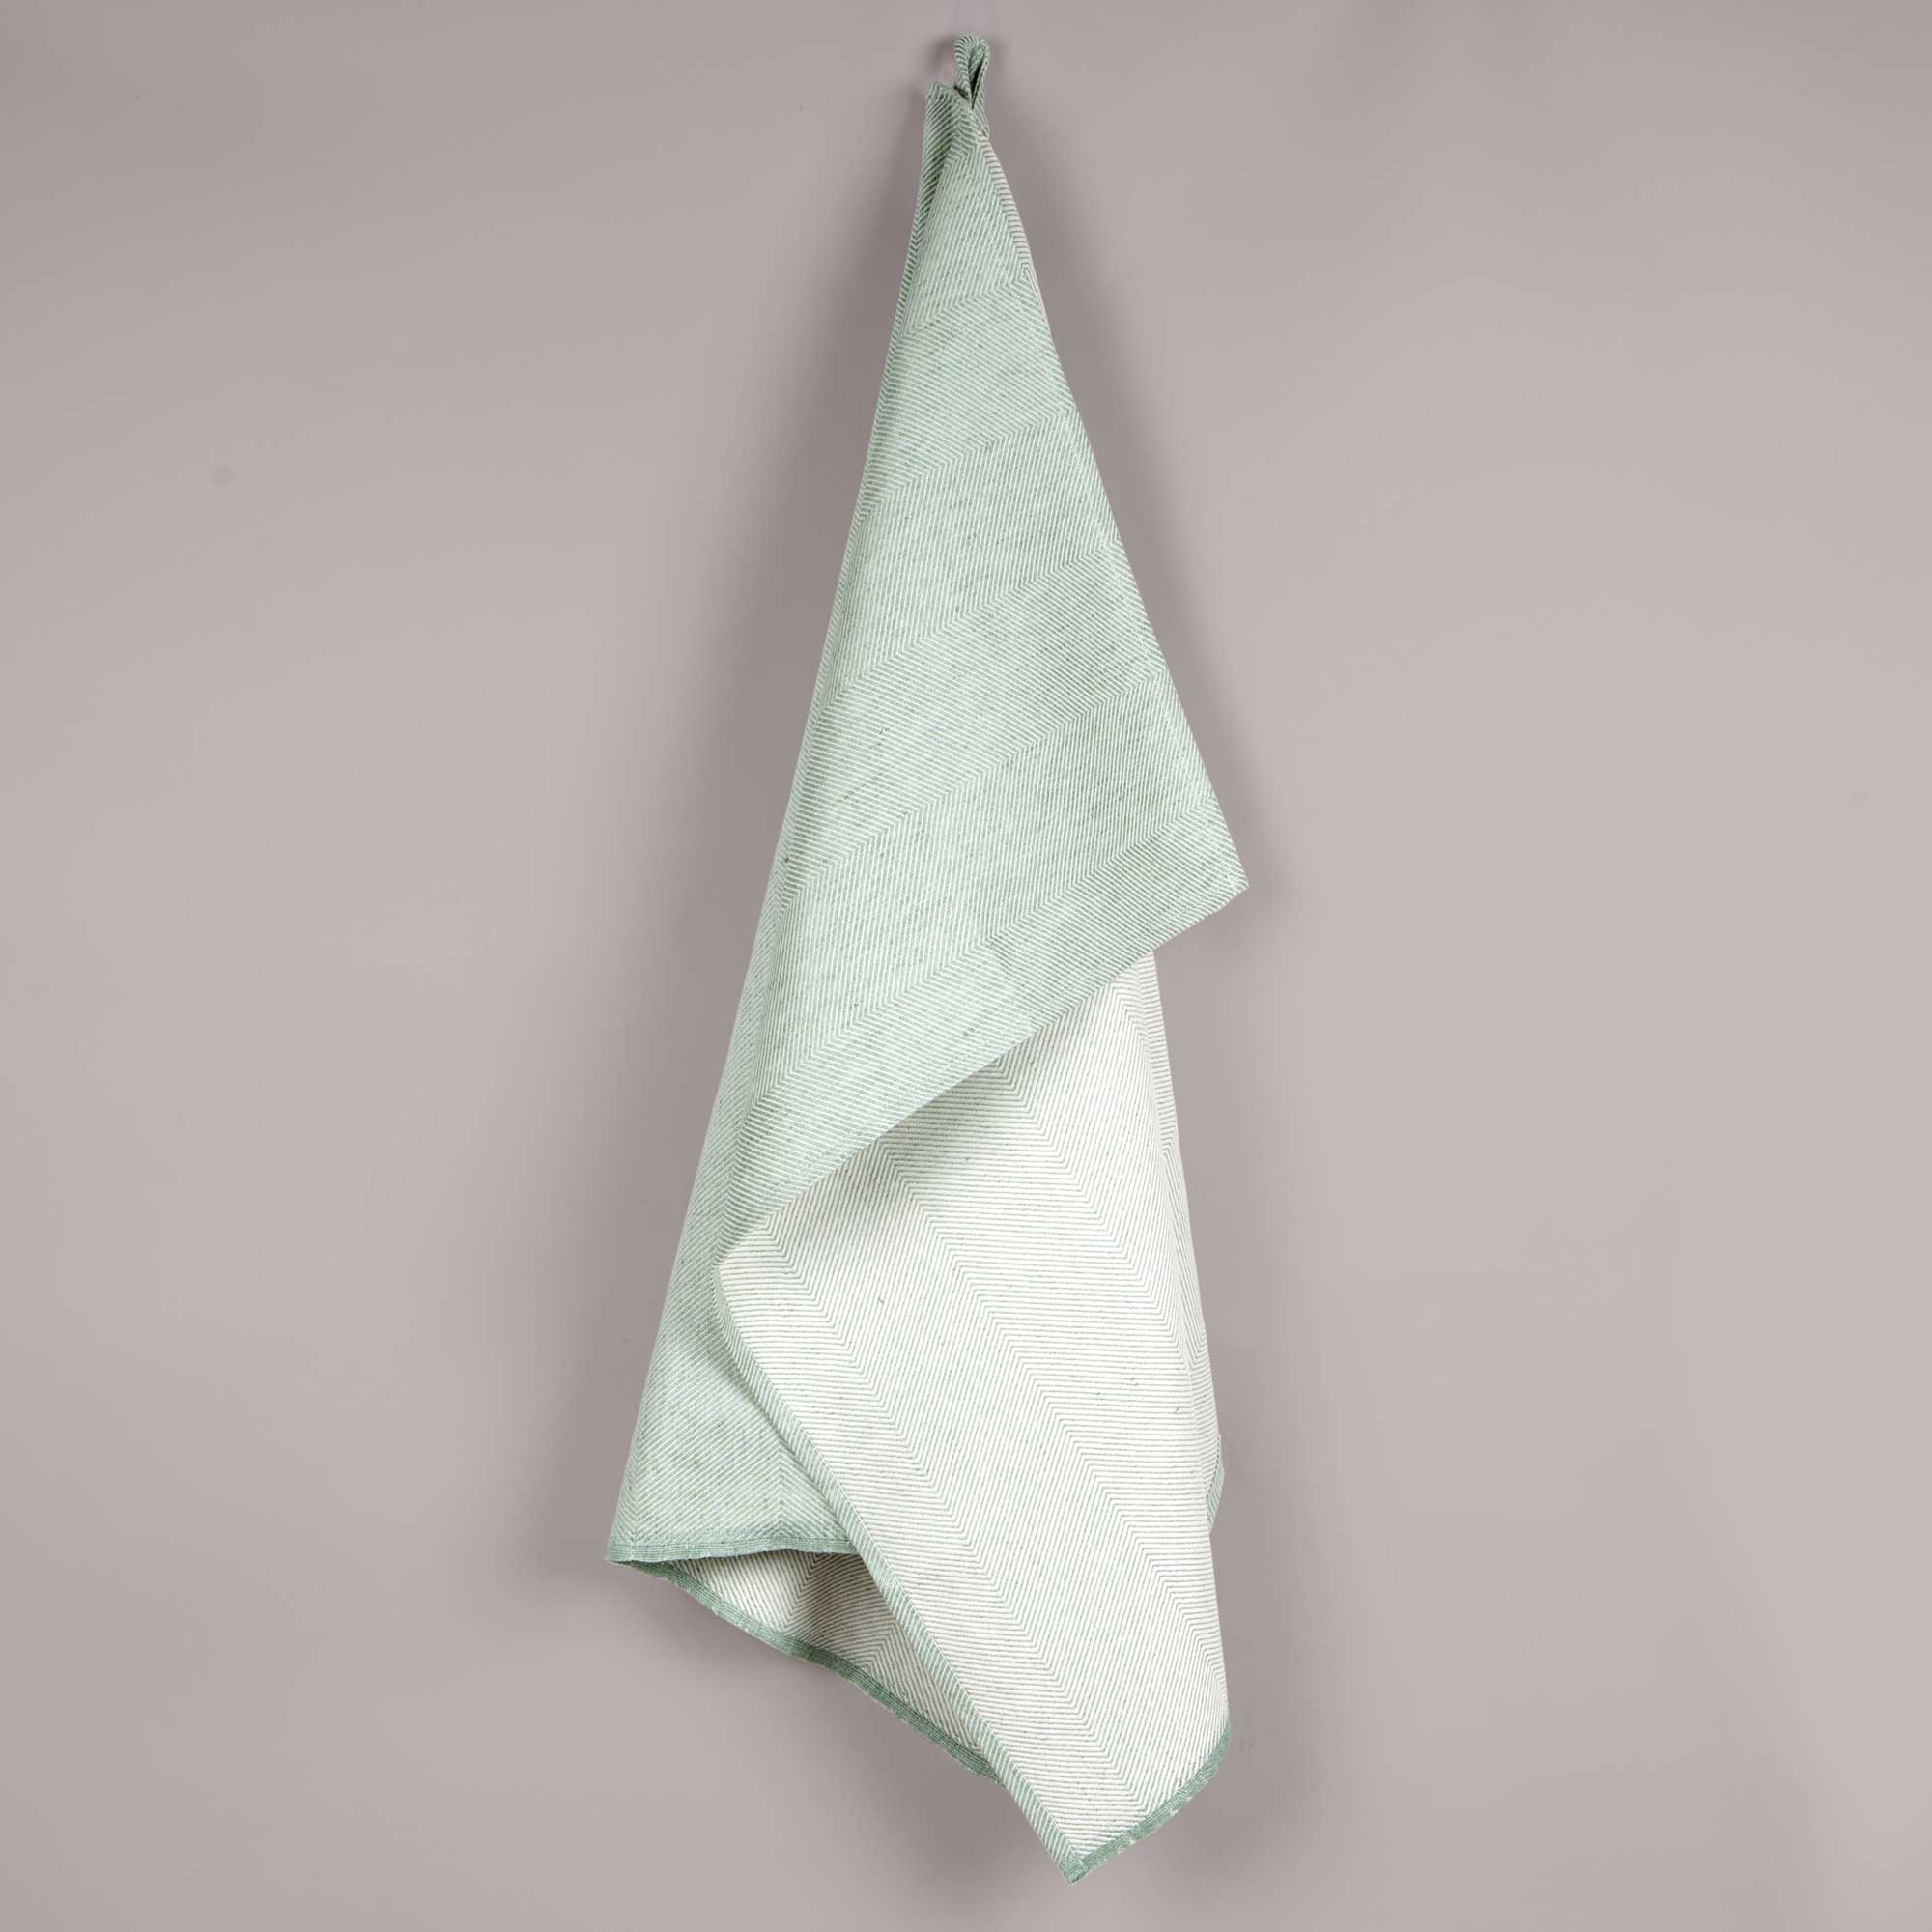 Towel, linen/cotton, aqua green